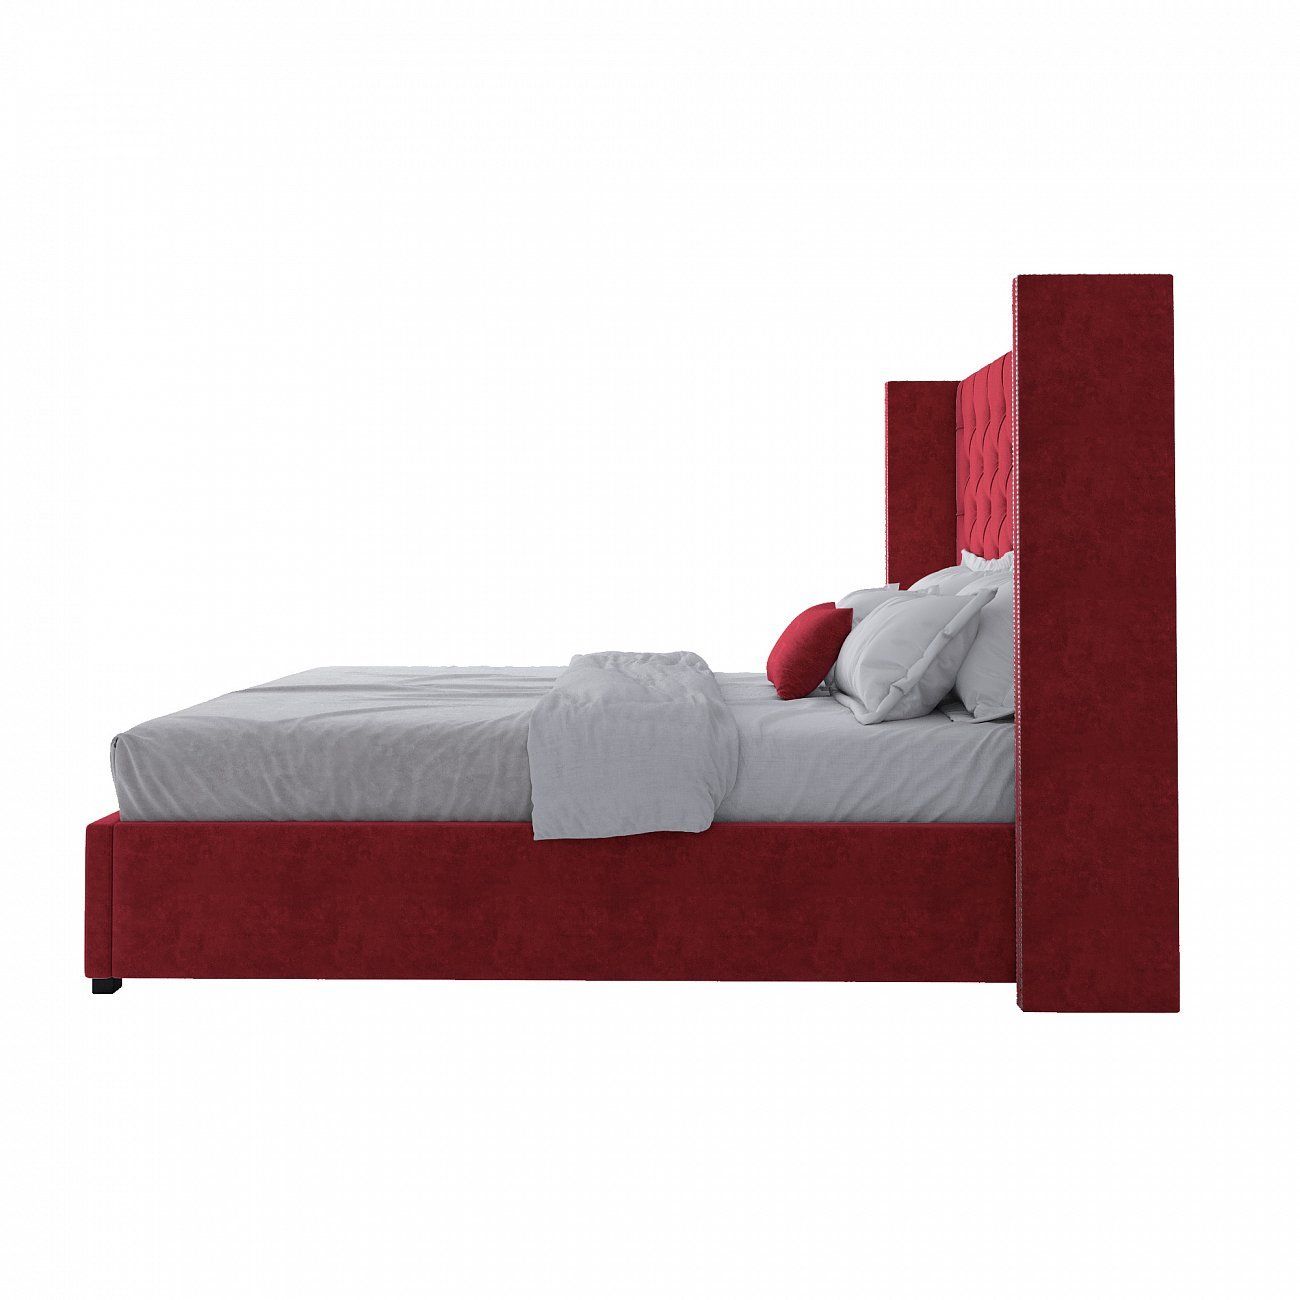 Кровать двуспальная с мягким изголовьем 160х200 см красная Wing